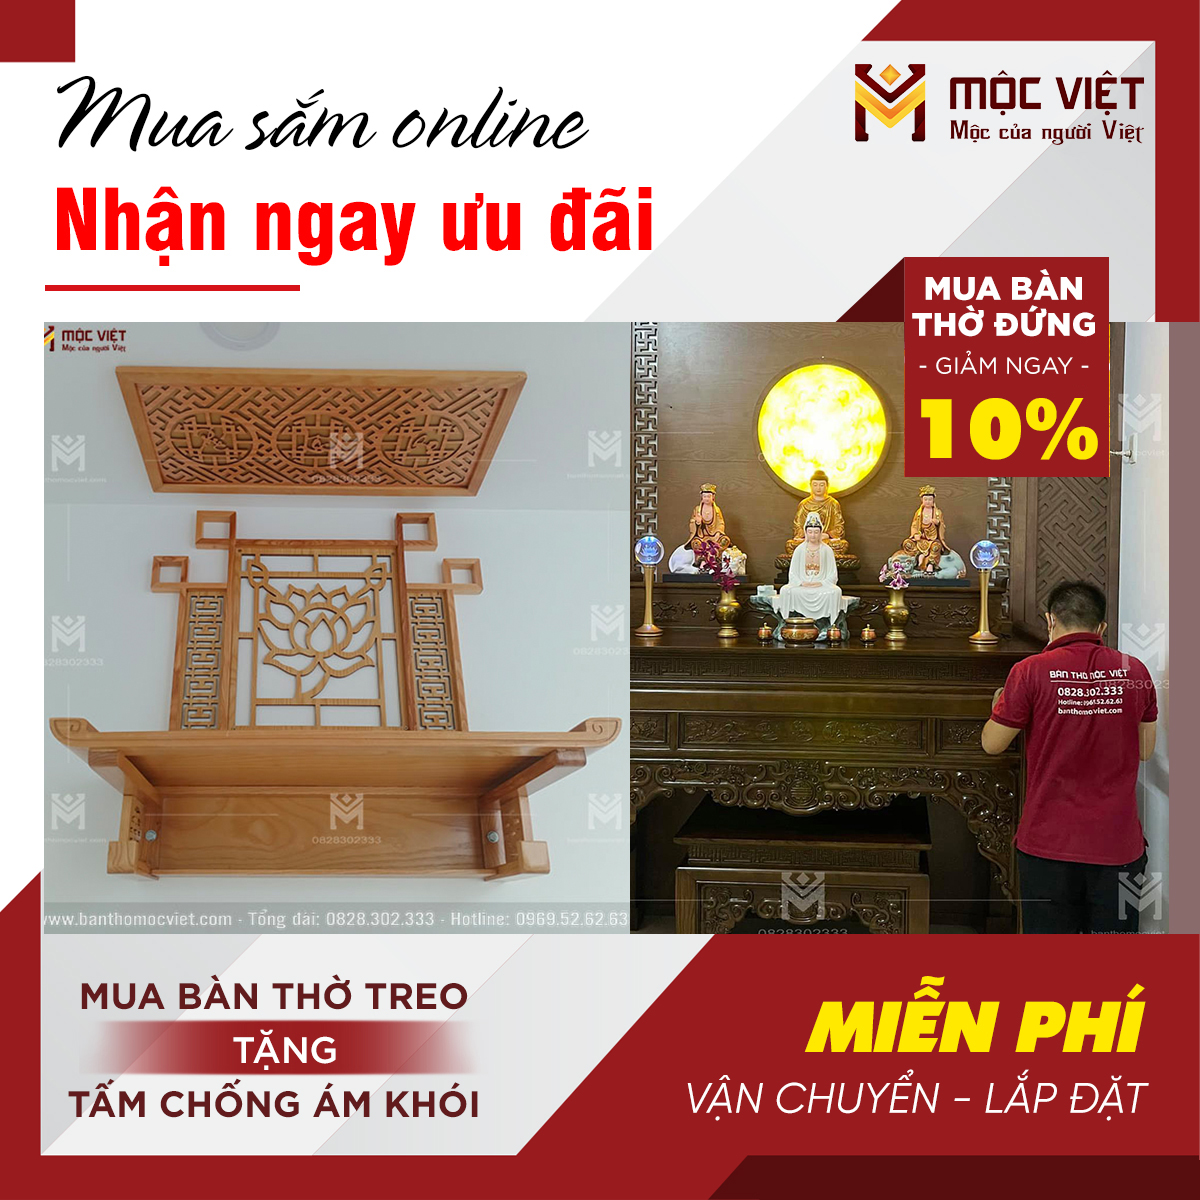 Khuyến mãi lớn khi mua hàng tại kho bàn thờ đẹp Mộc Việt